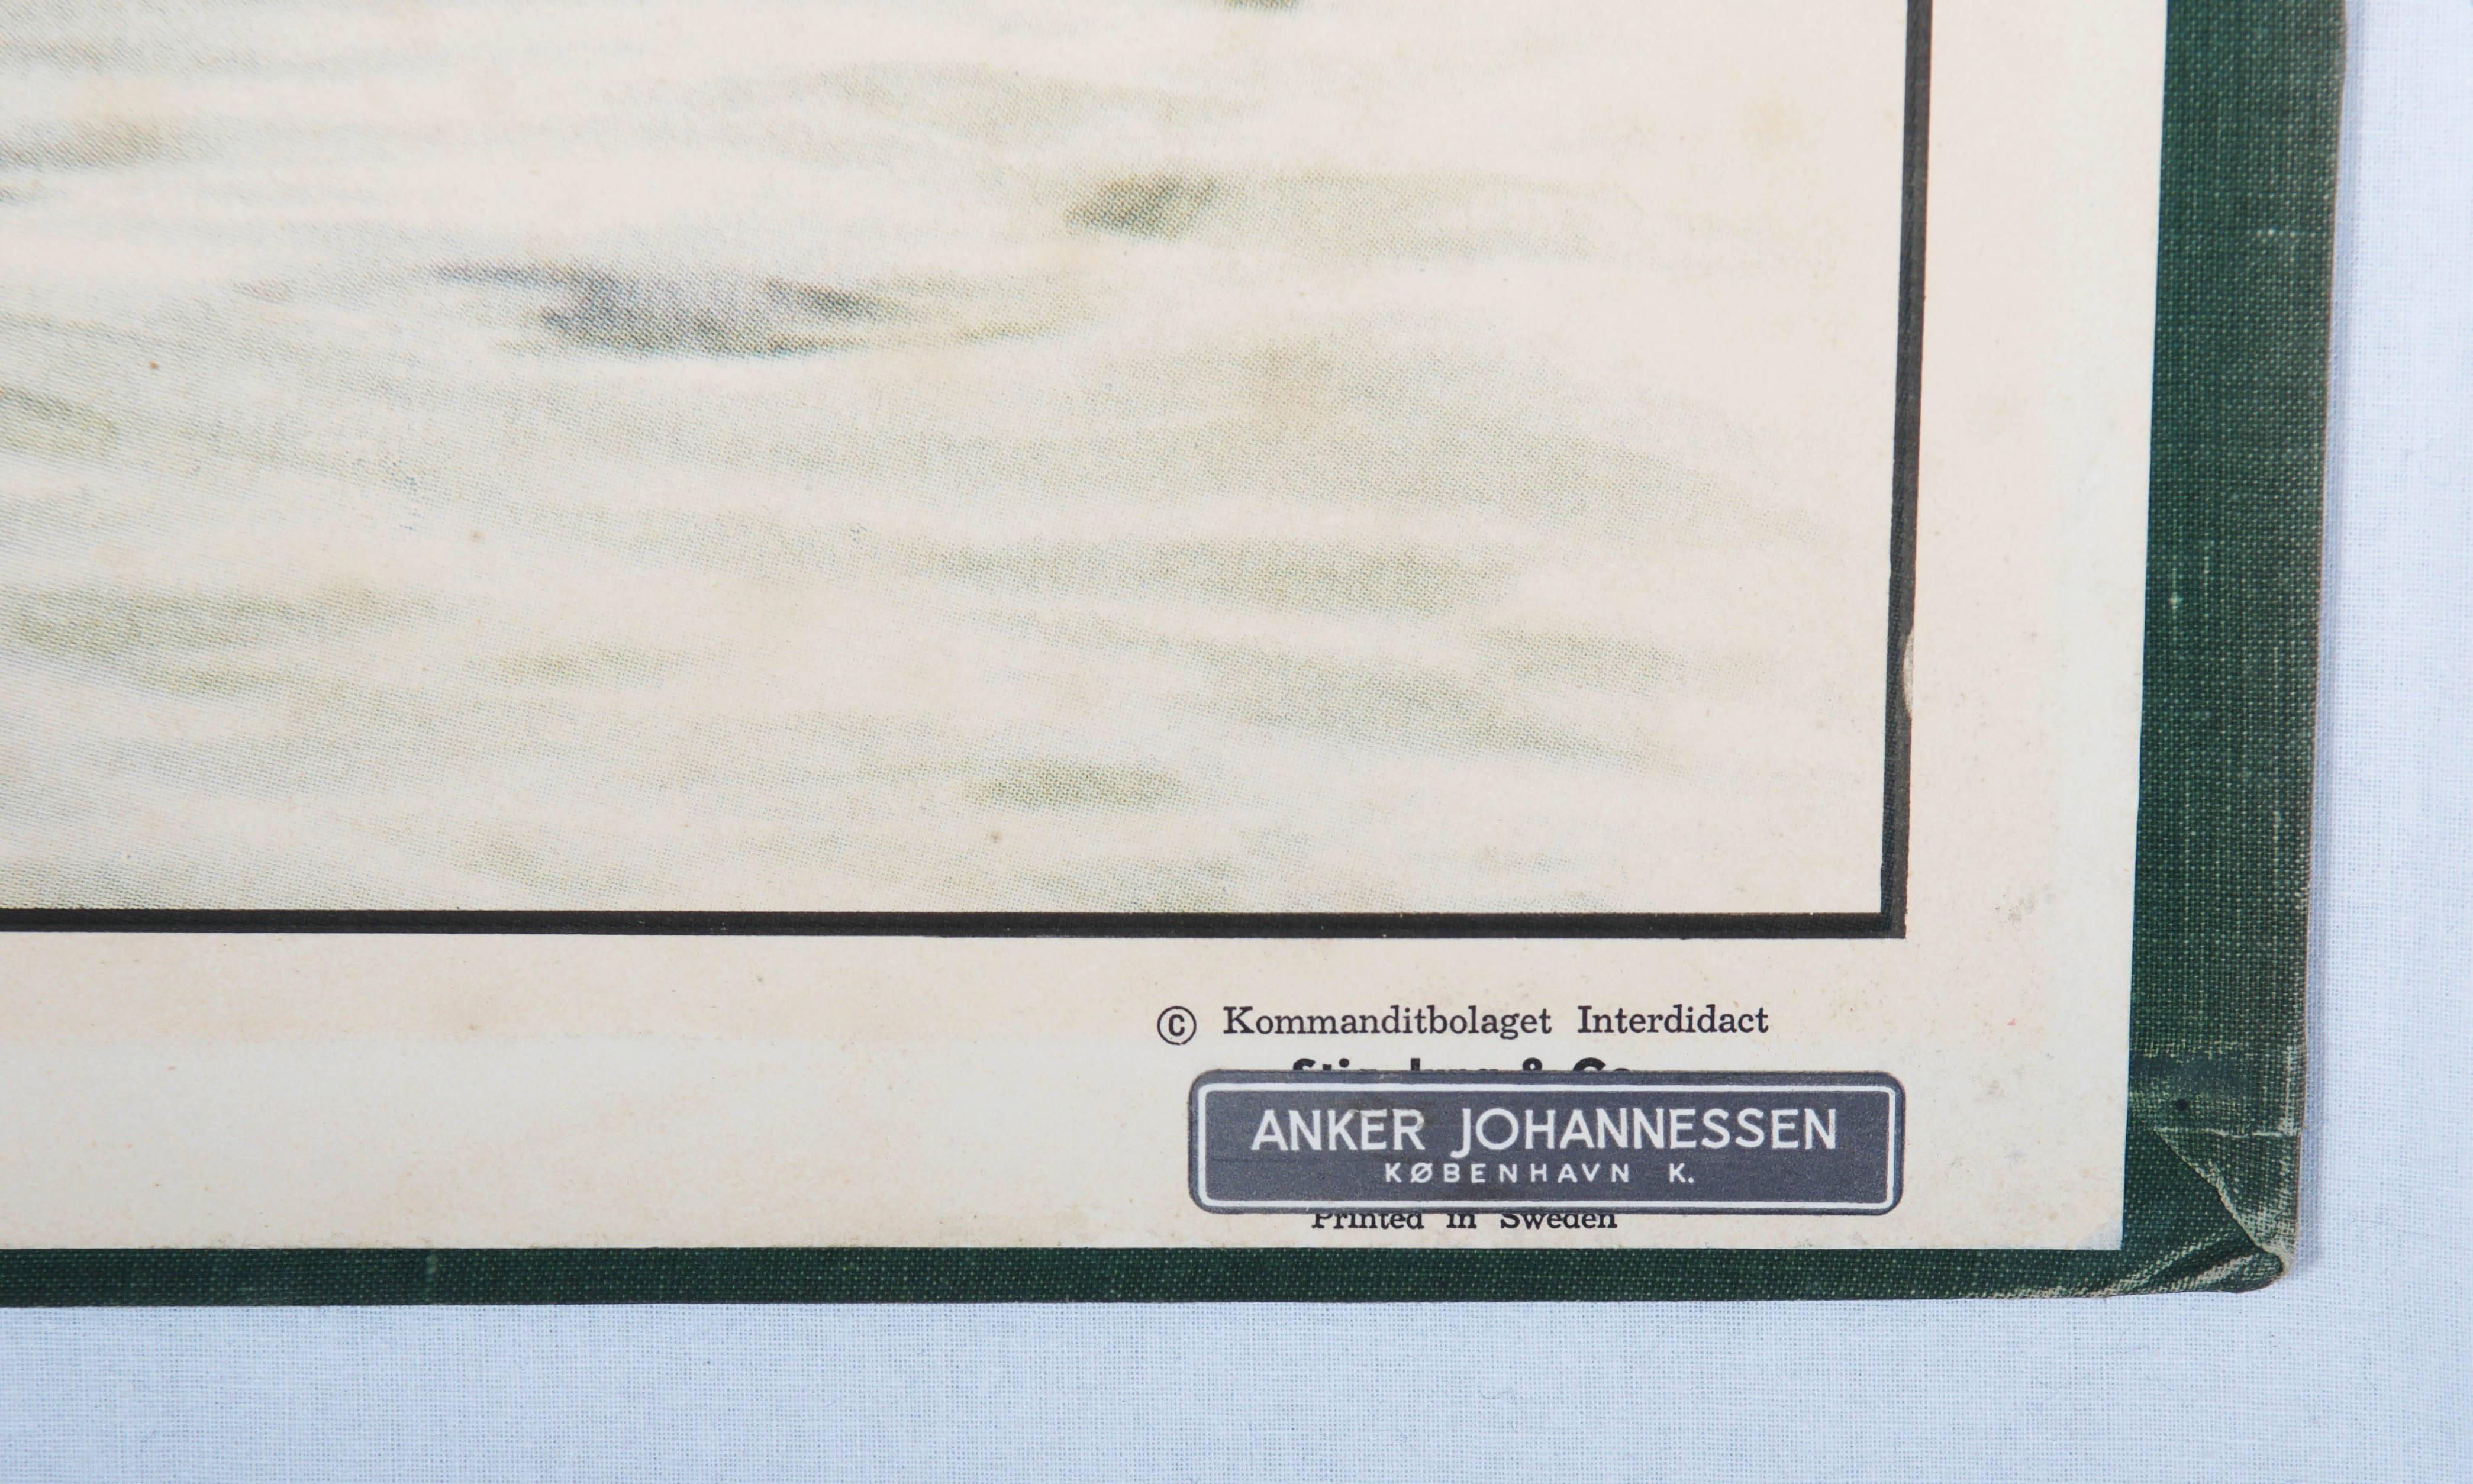 Gedruckt in Schweden, signiert M. Richter. Beschreibung in fünf Sprachen. 
Abmessungen: 70 x 100 cm. Altersbedingte Patina.